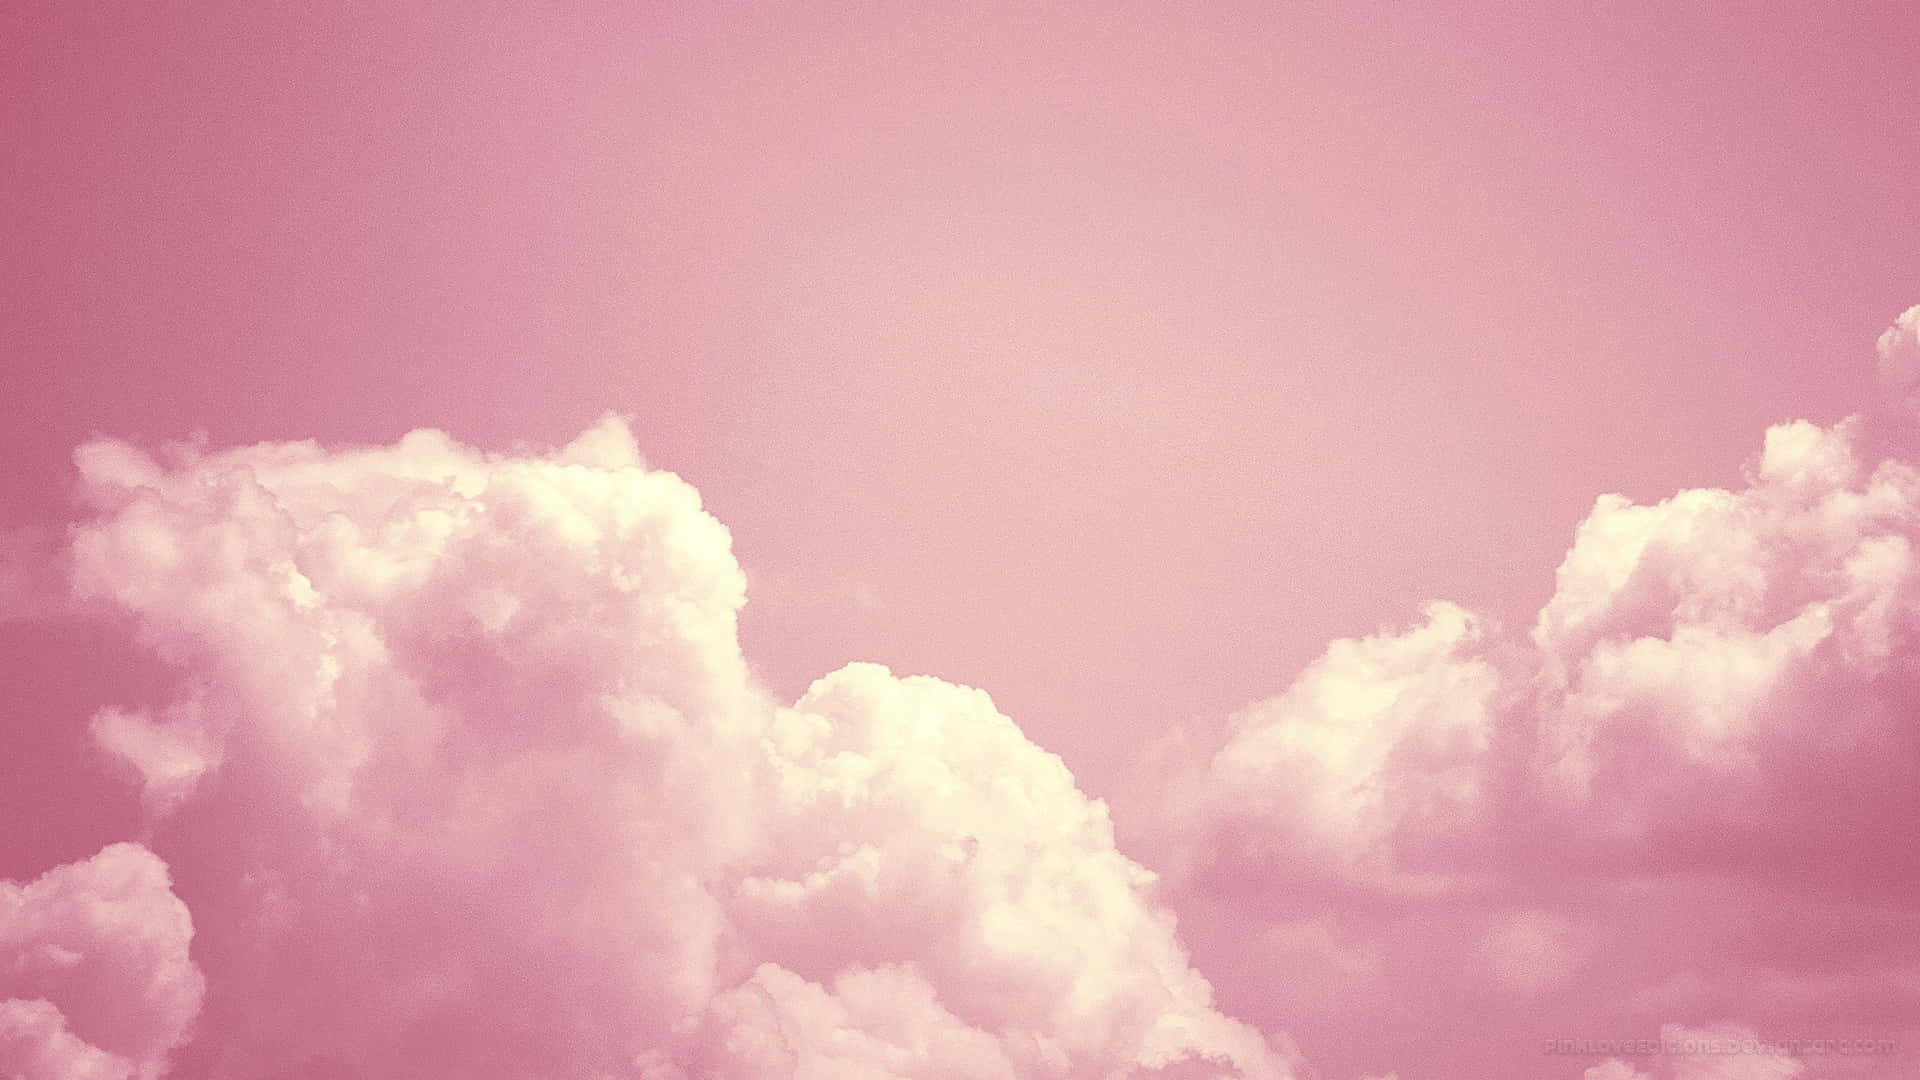 Pink Clouds Wallpaper - Wallpapers For Desktop